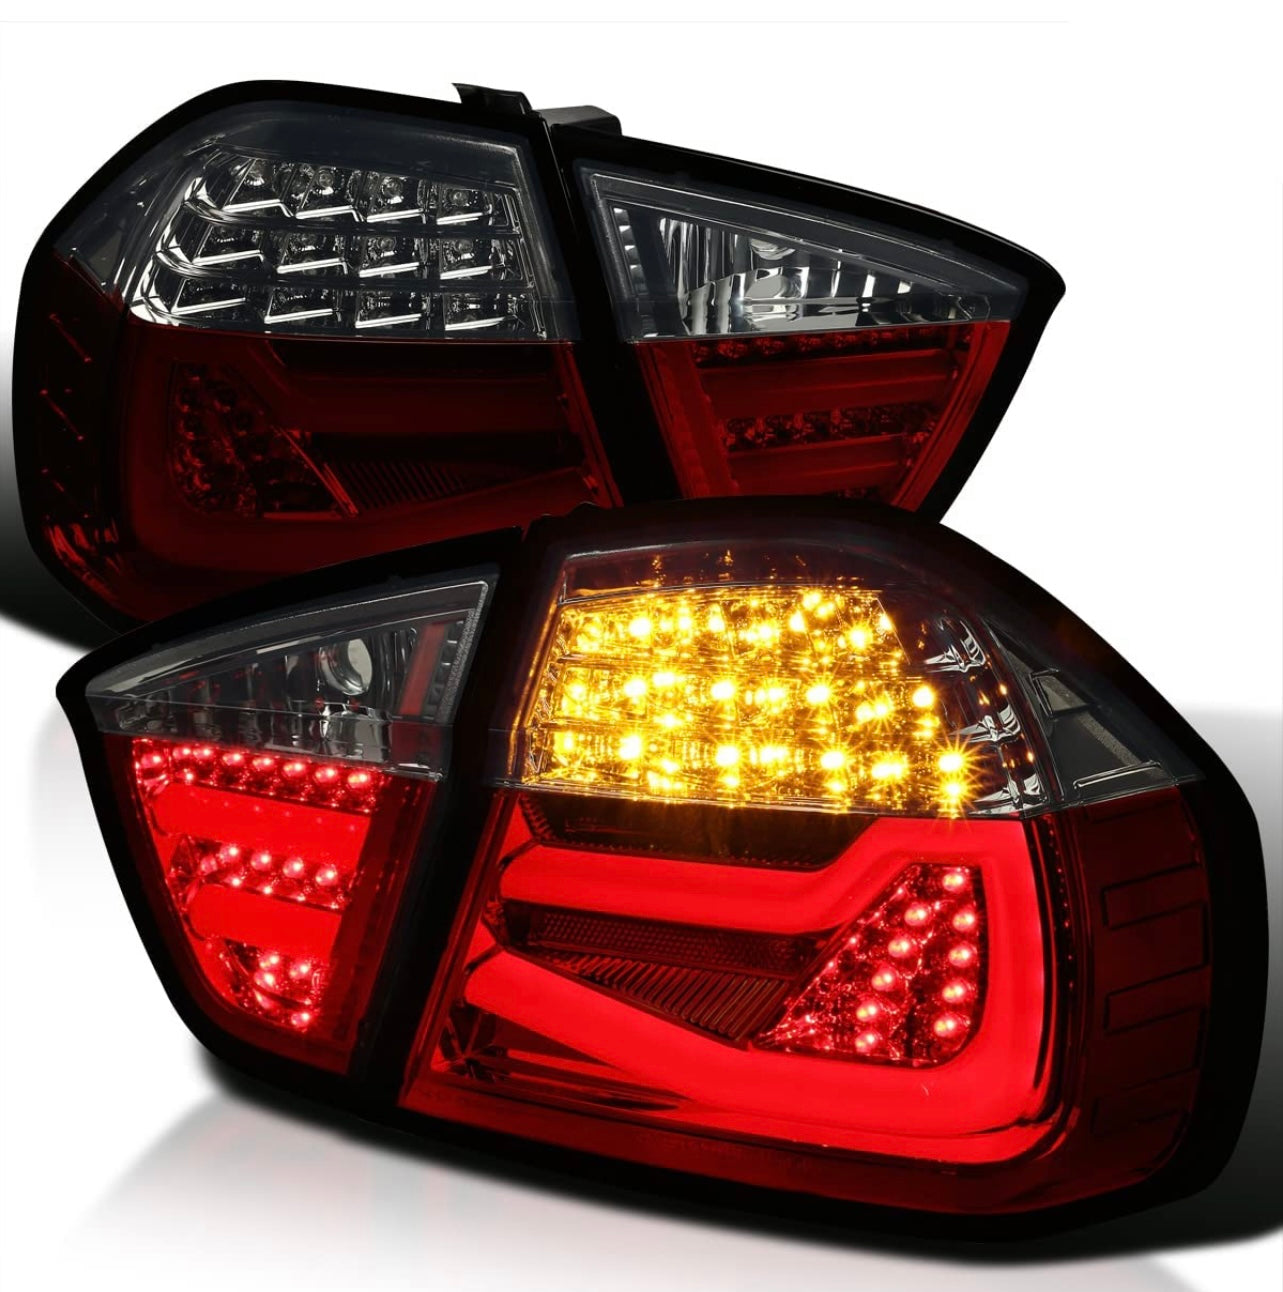 ¡Luces traseras mejoradas LED BMW E90 Pre-LCI!